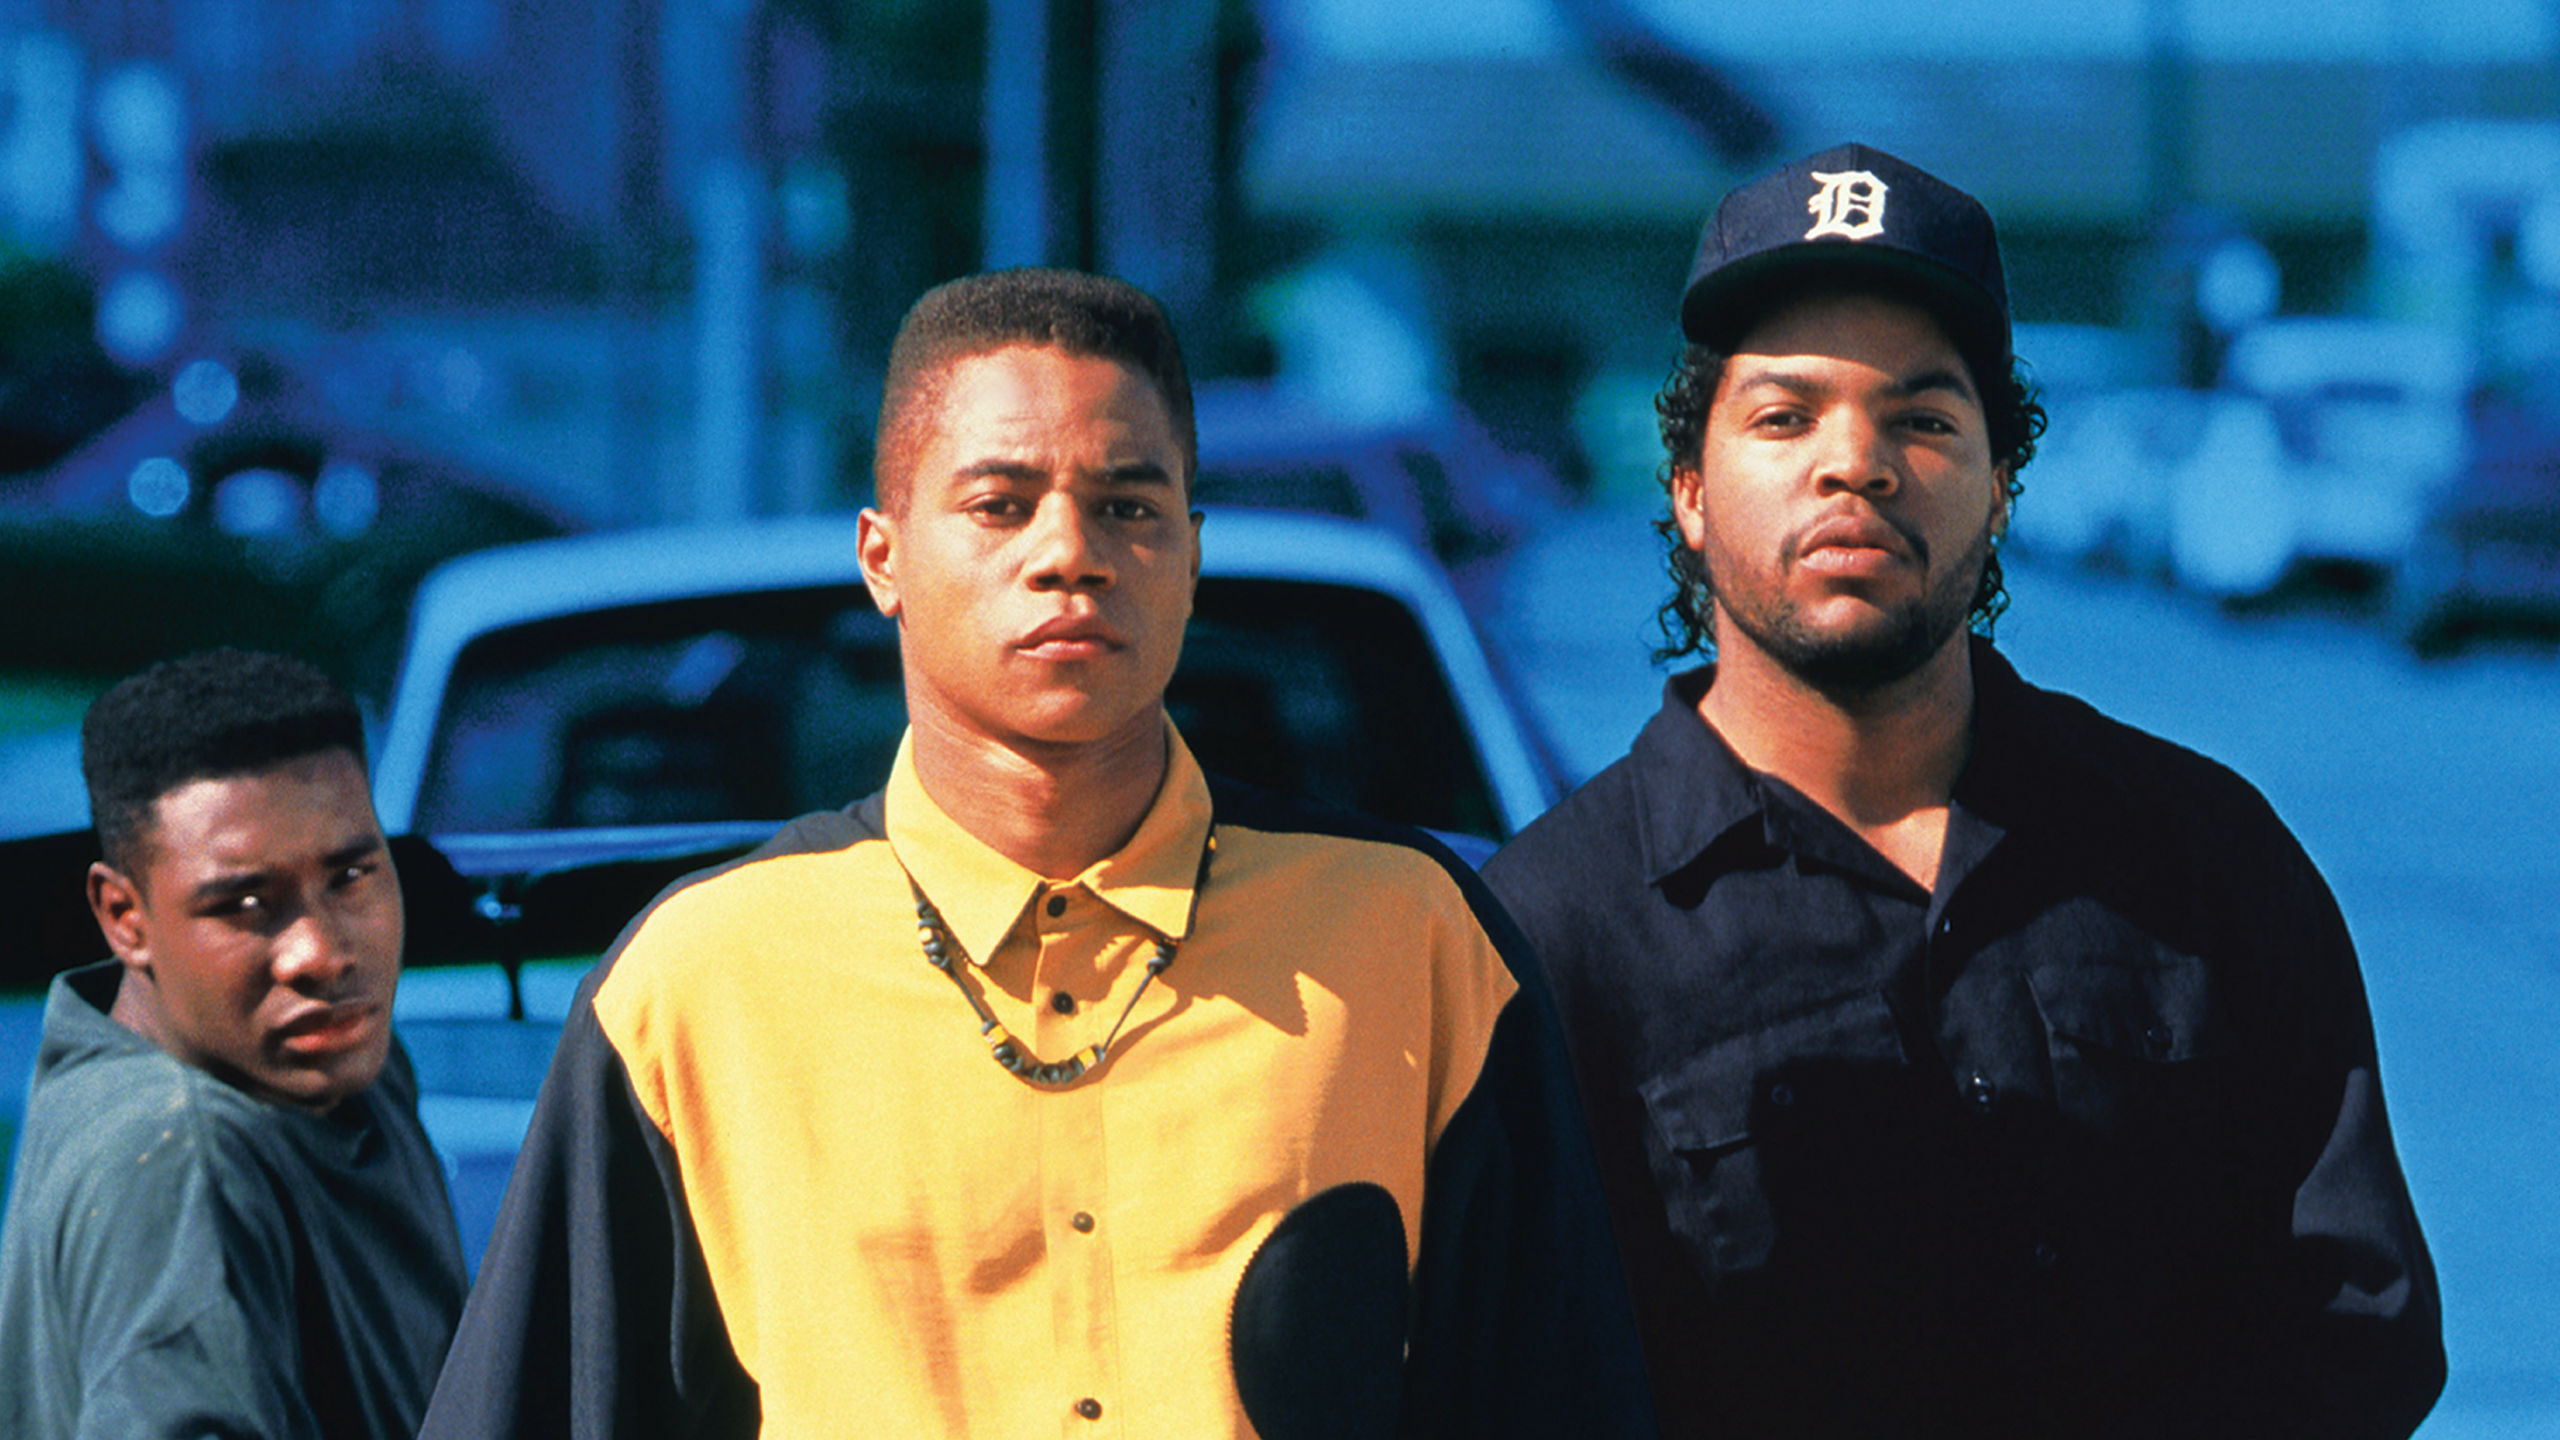 Айс Кьюб ребята с улицы. Ребята с улицы (1991) Boyz n the Hood. Брат по соседству